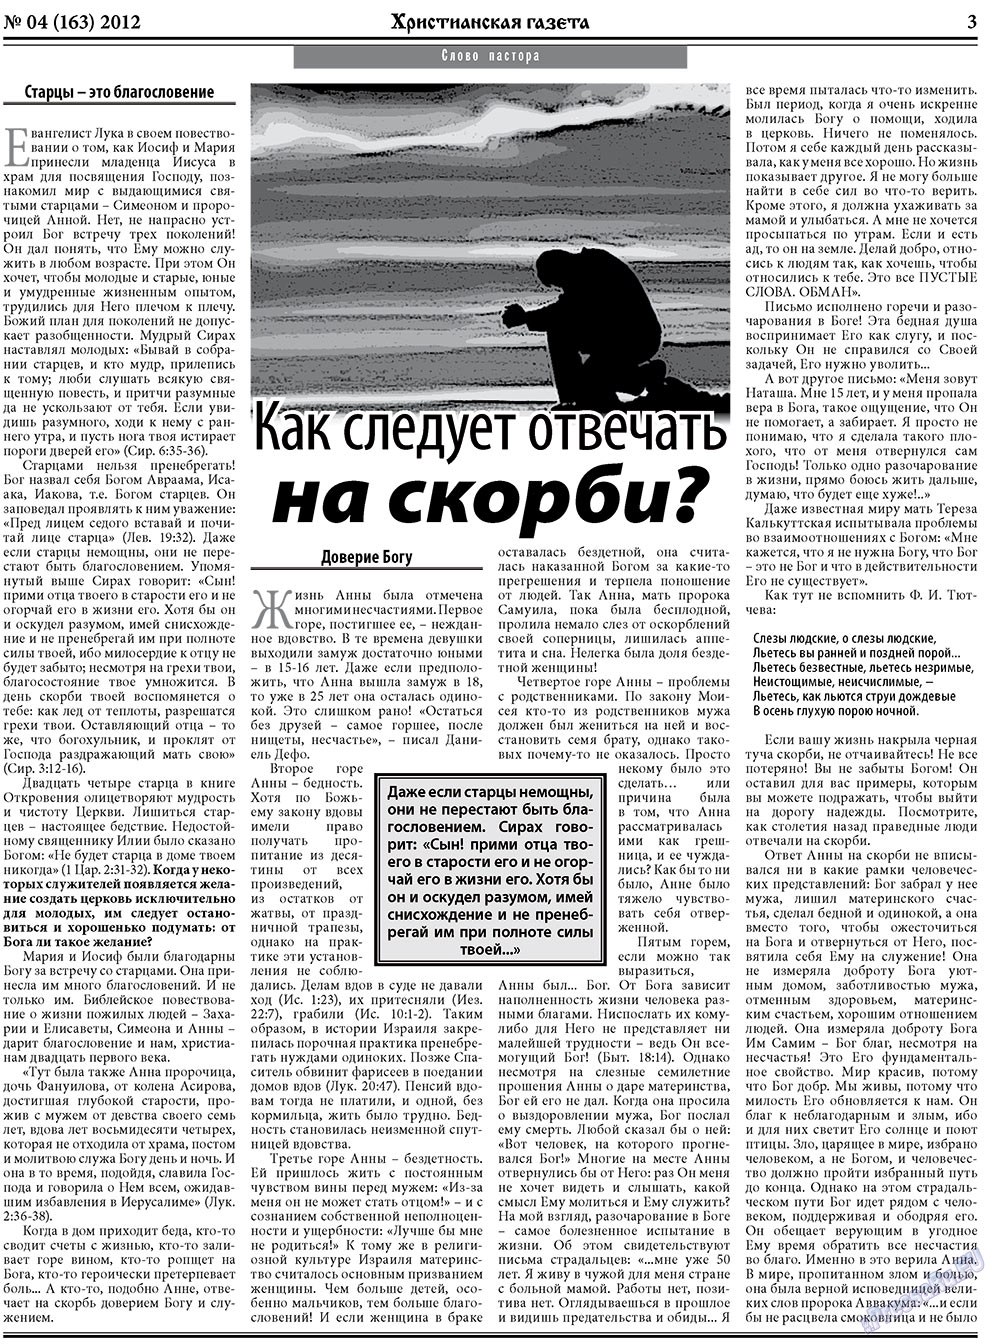 Христианская газета, газета. 2012 №4 стр.3